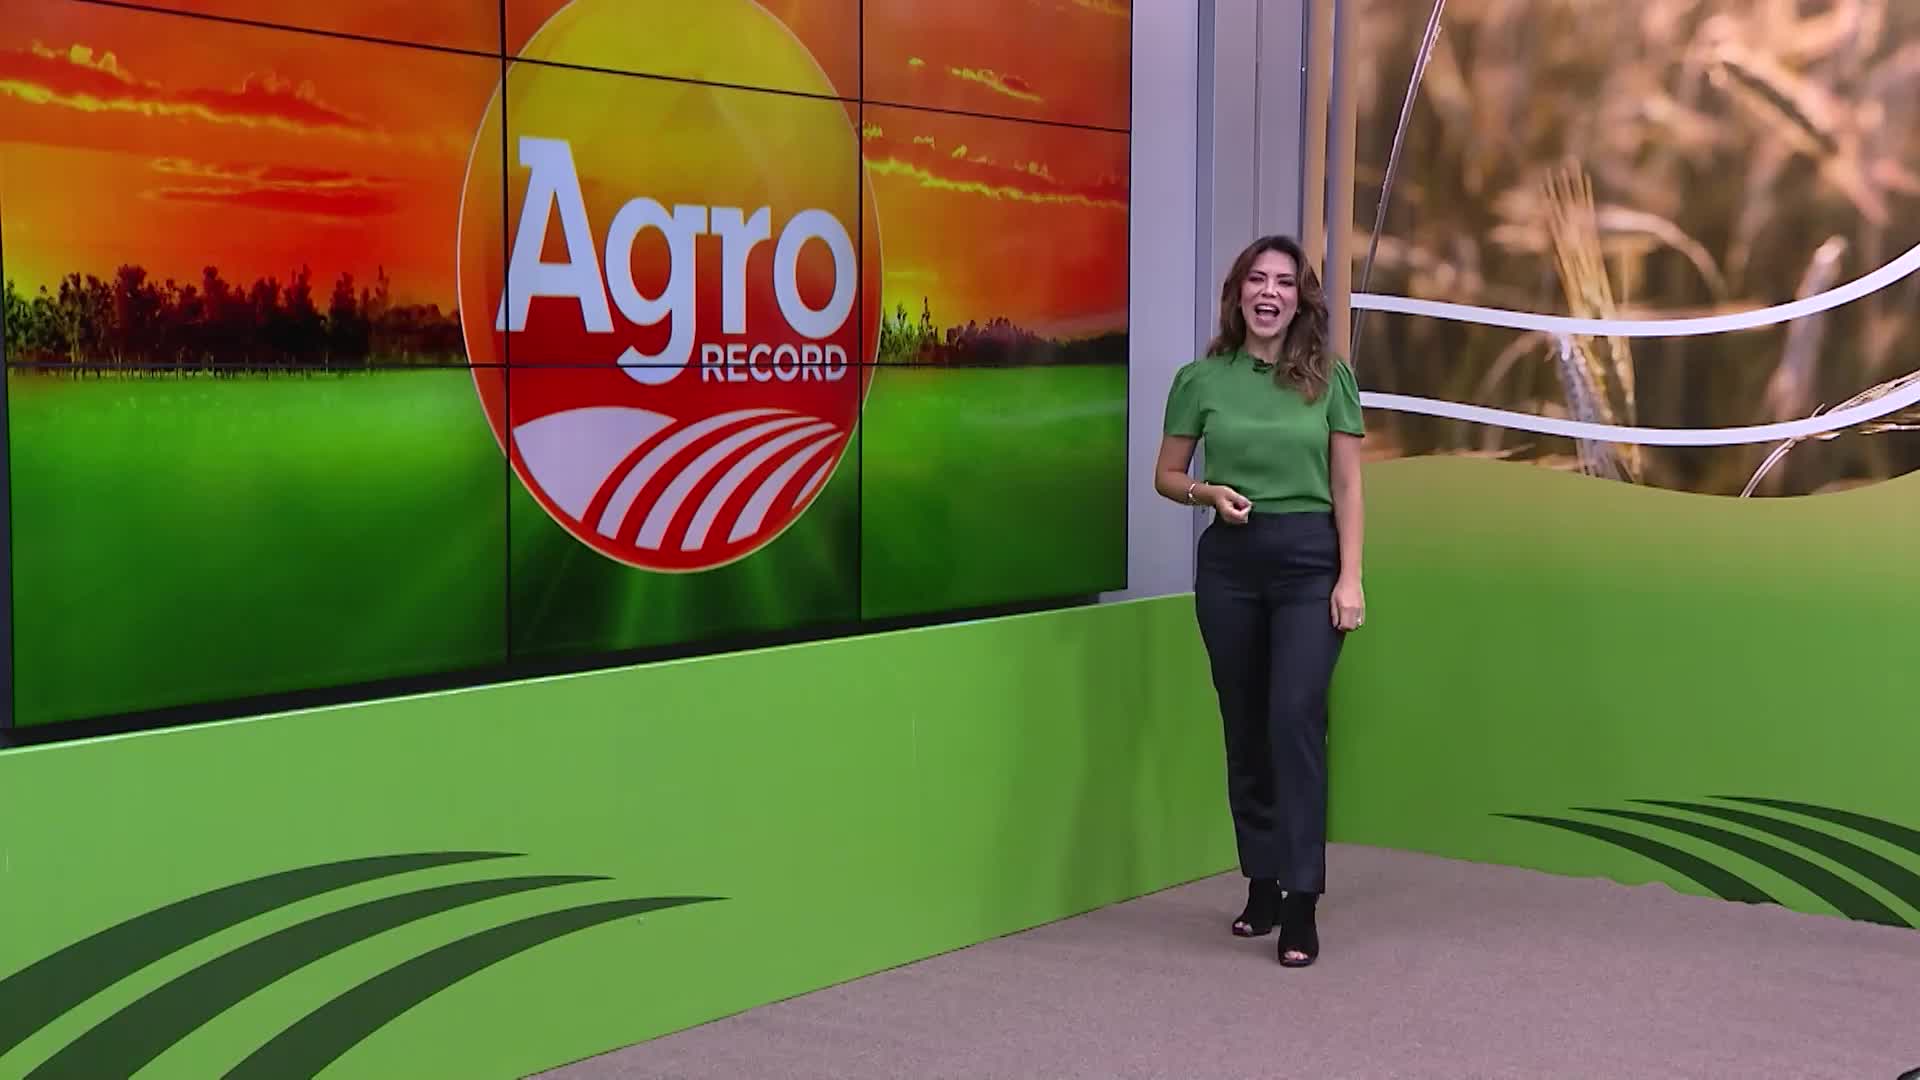 Vídeo: Veja a íntegra do Agro Record deste domingo (5)